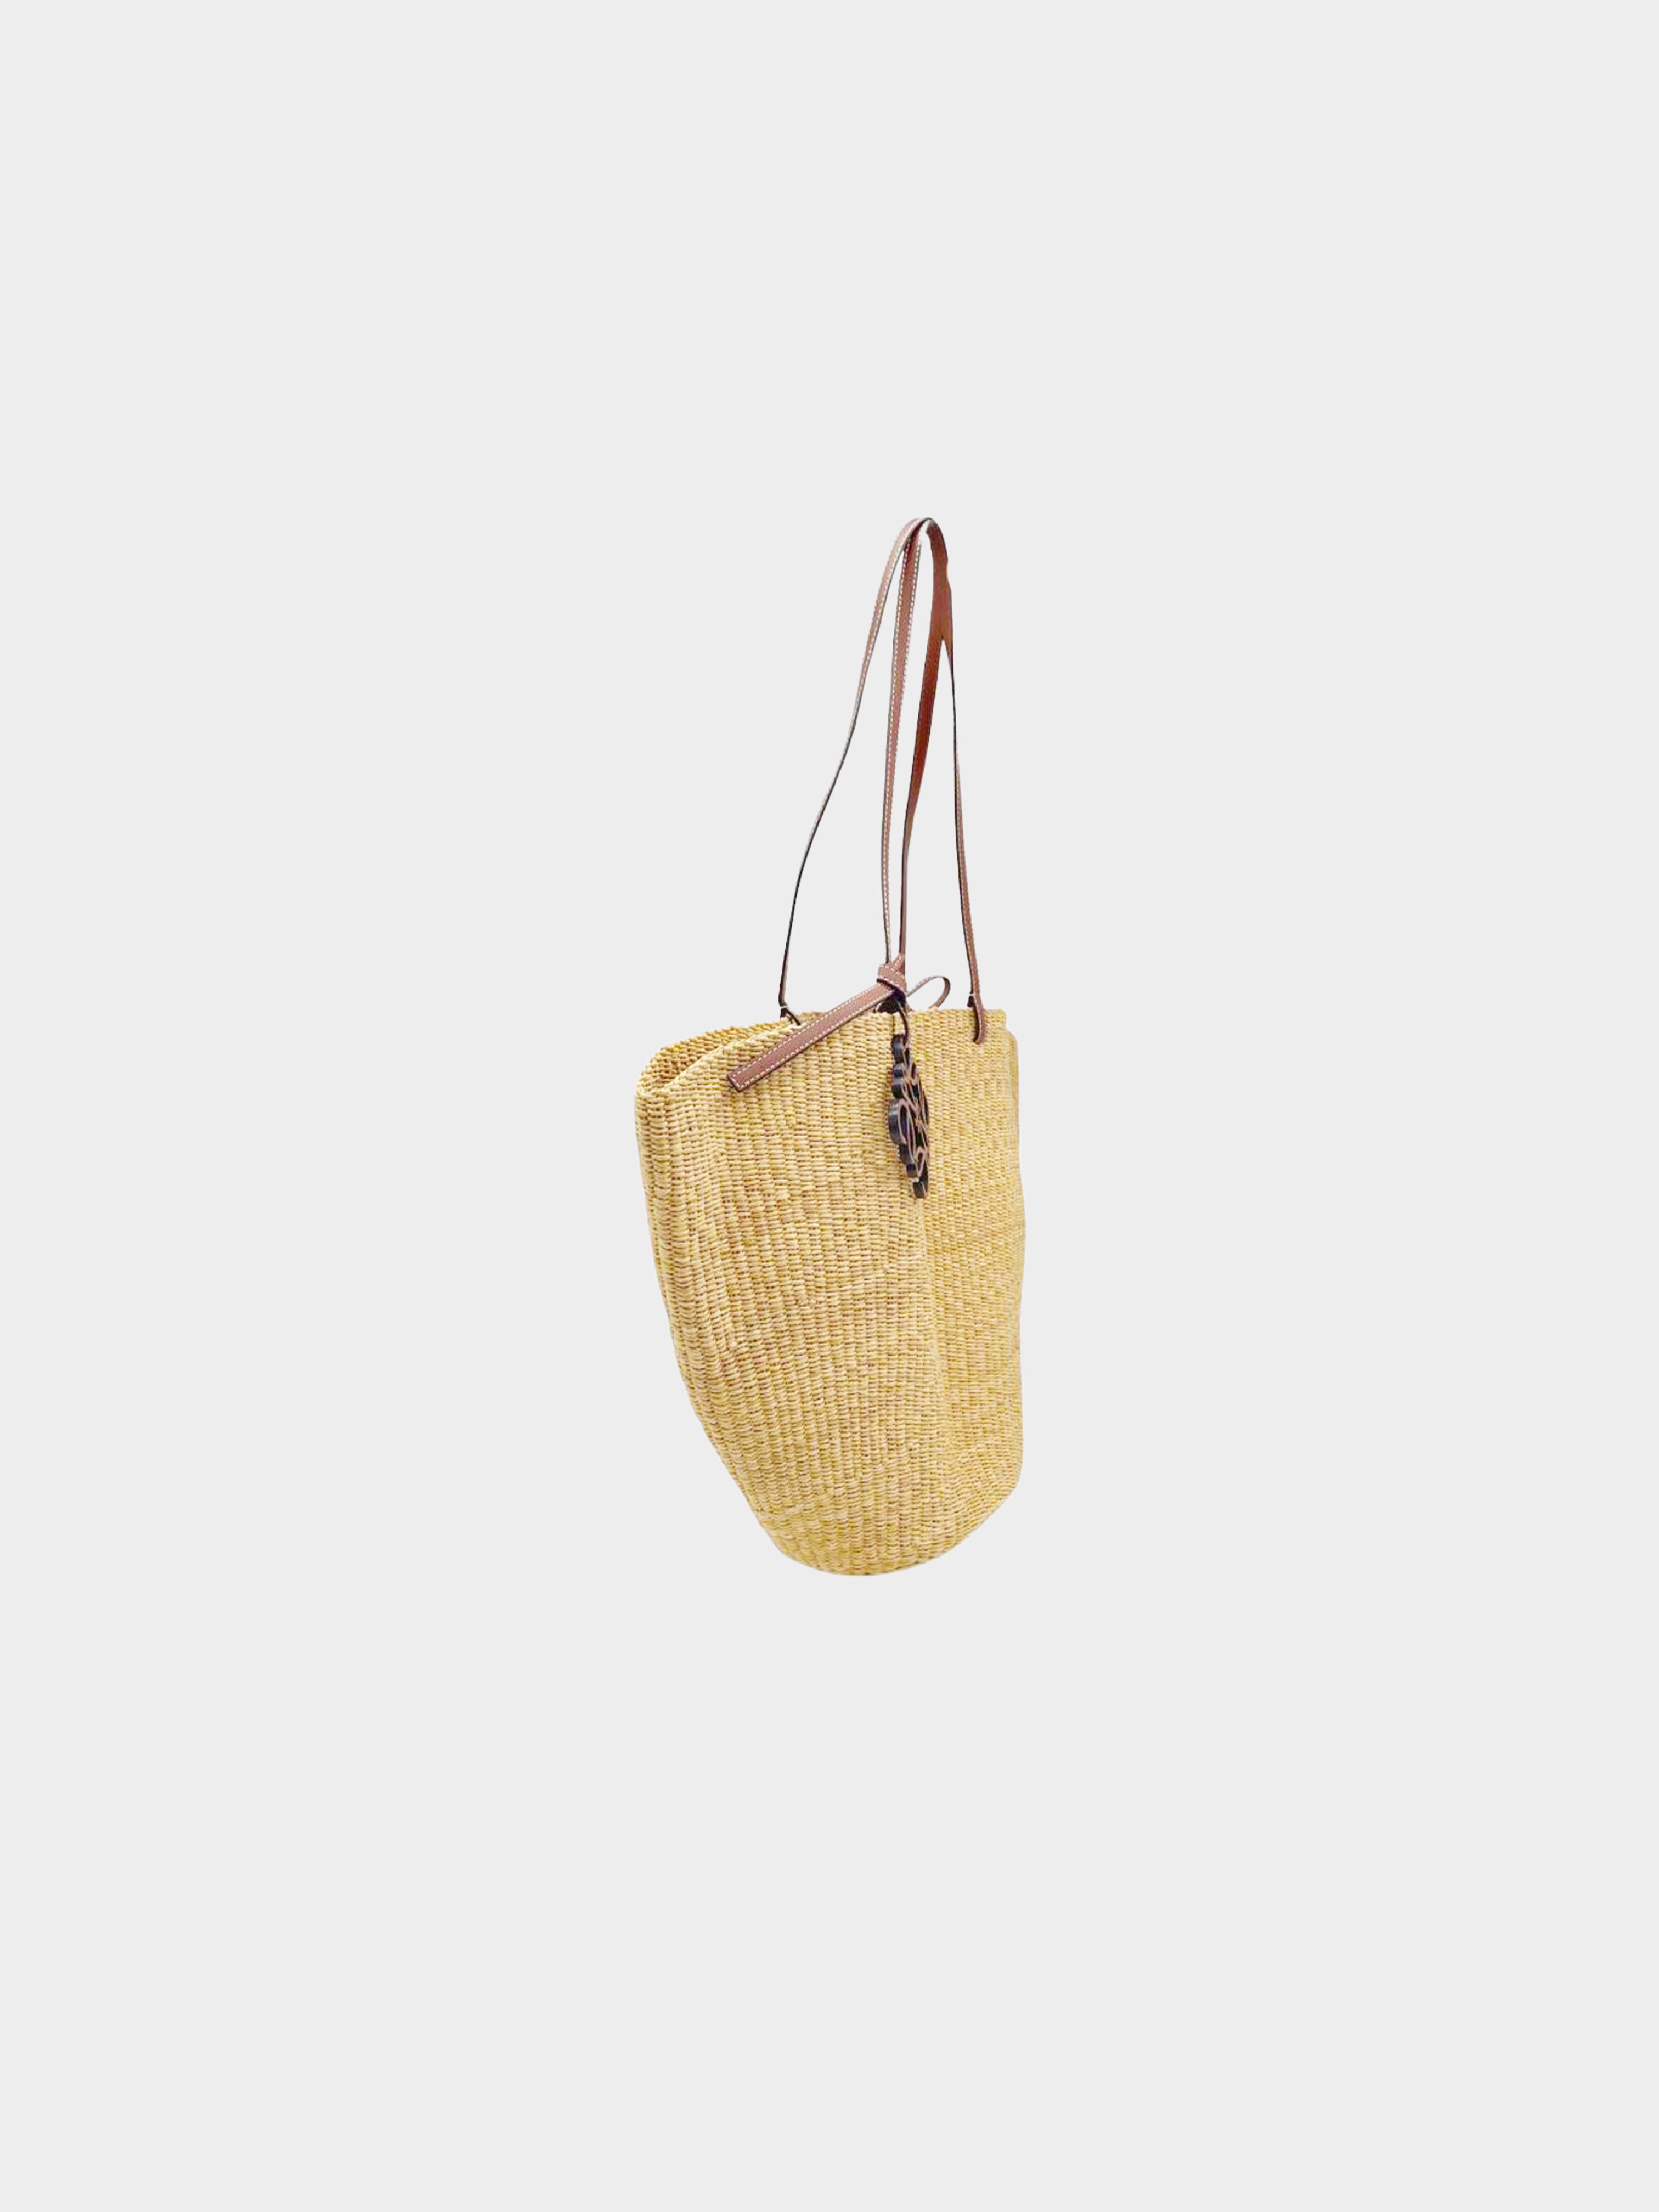 LOEWE x Paula’s Ibiza Shell Basket Bag | Harrods US